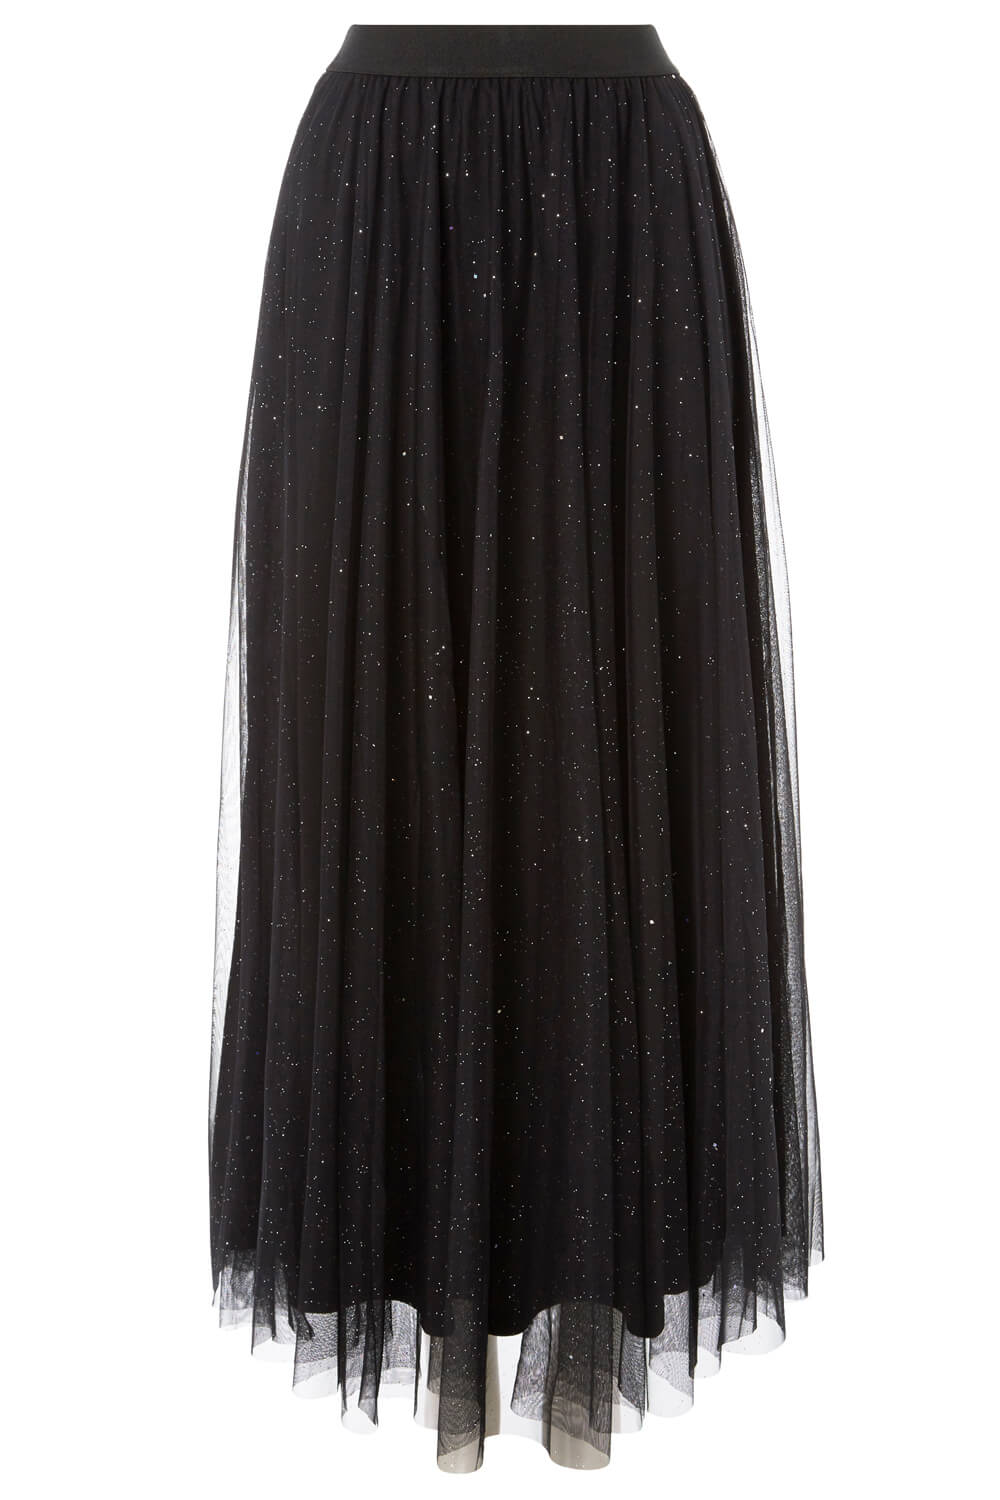 Mesh Sparkle Maxi Skirt in Black - Roman Originals UK